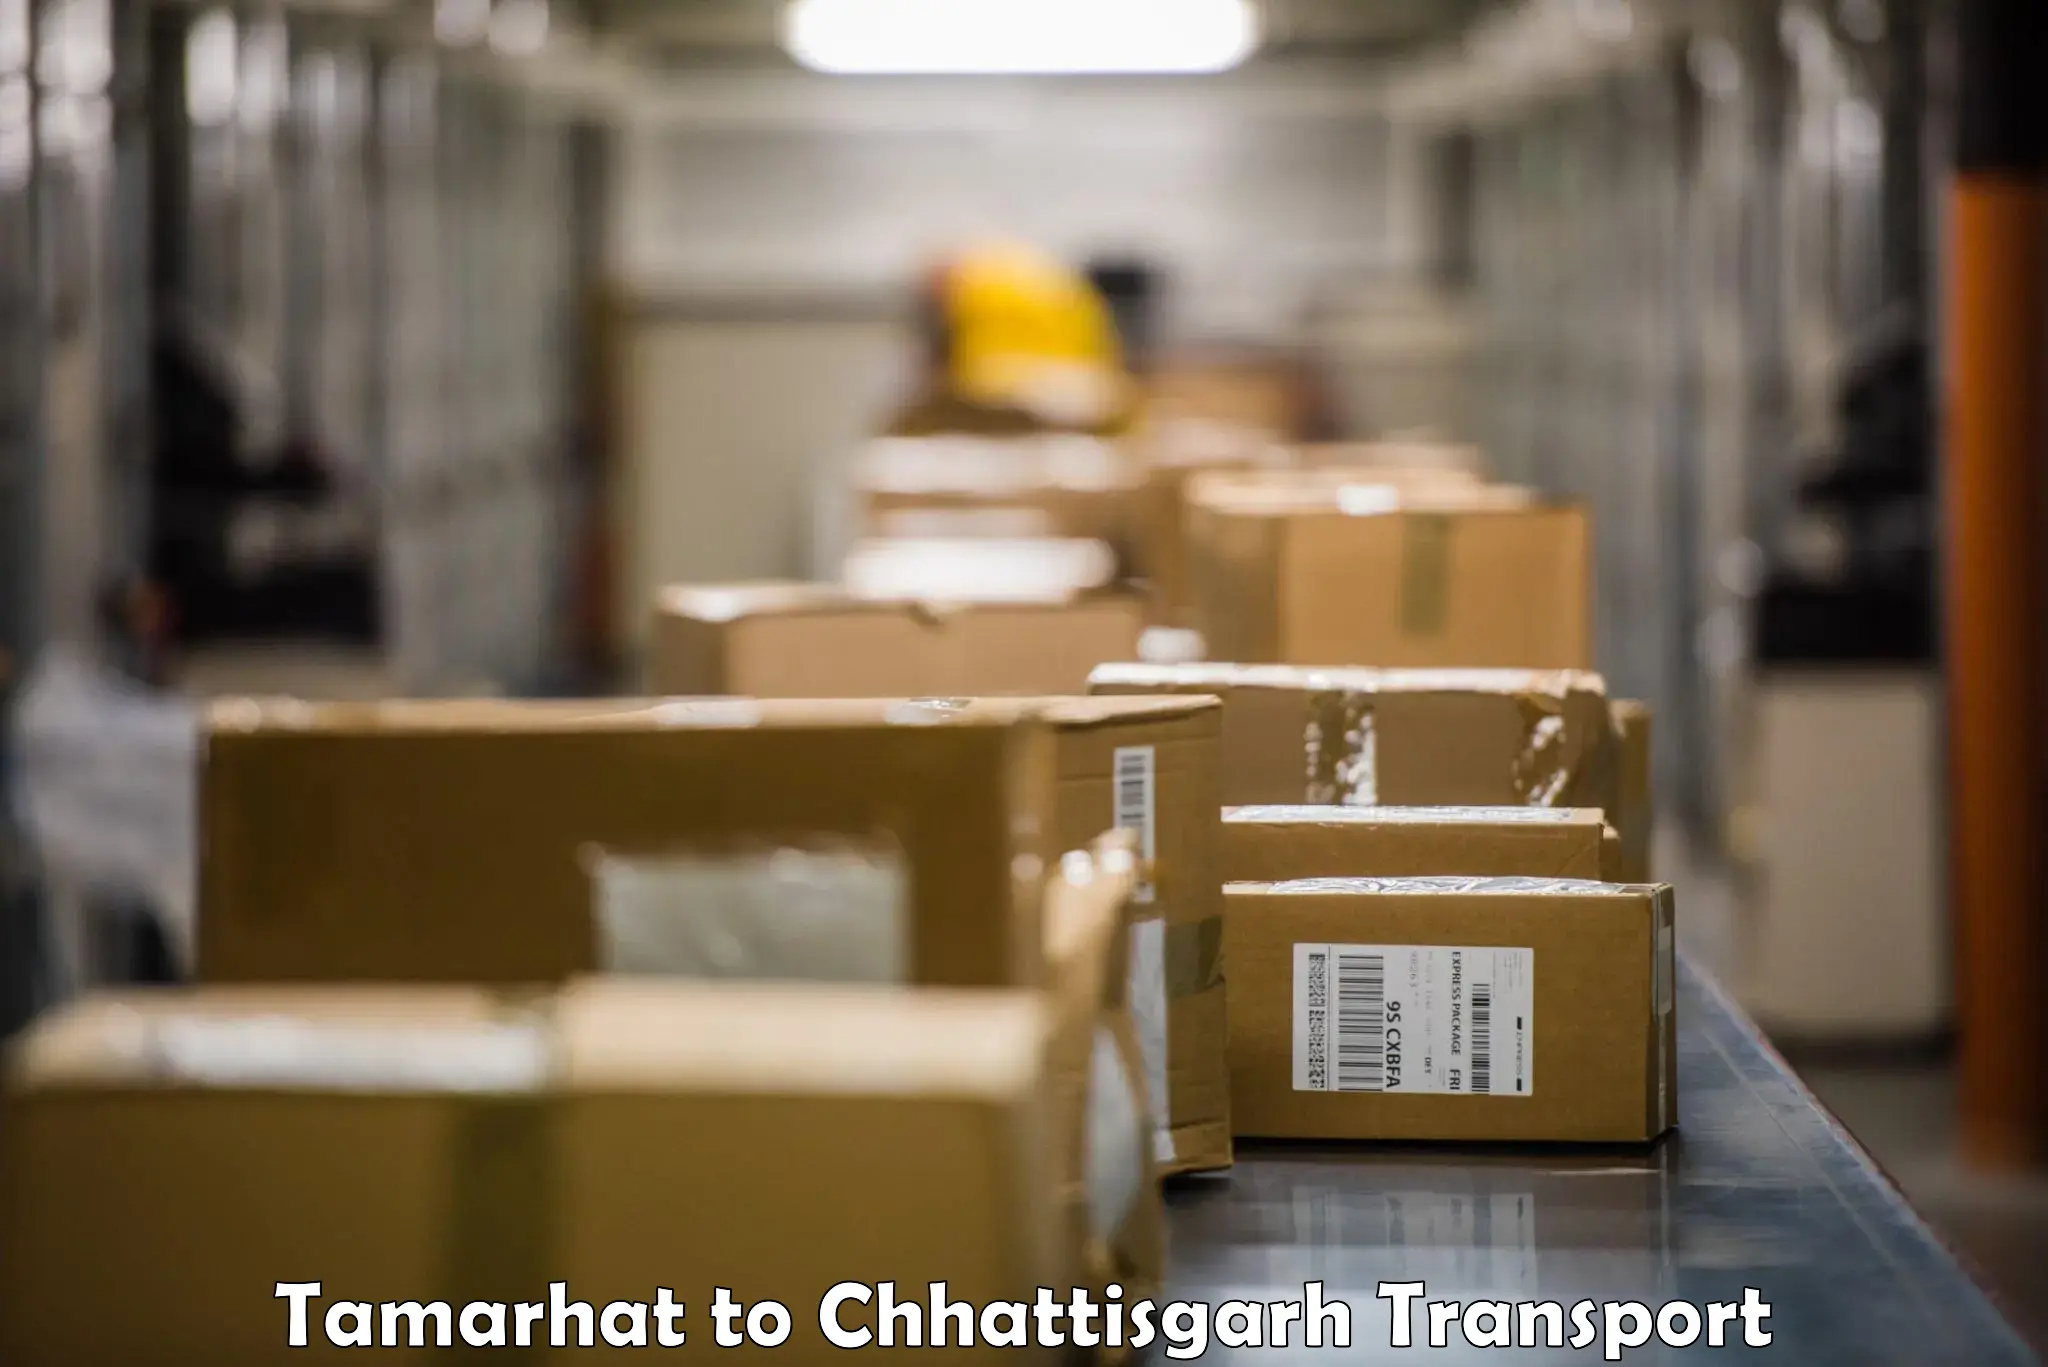 Pick up transport service Tamarhat to Patan Durg